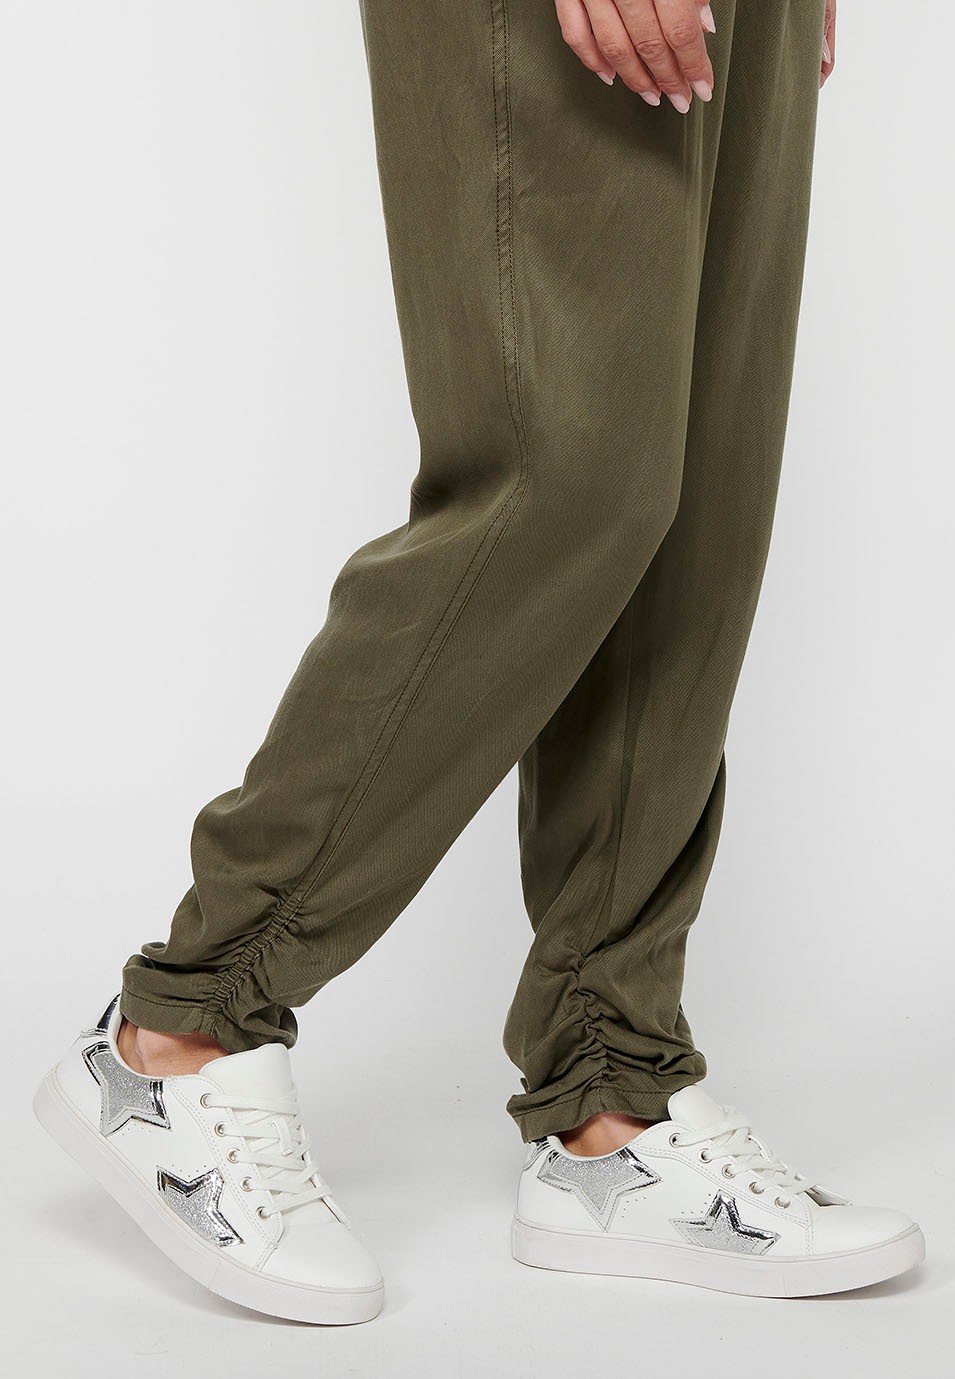 Pantalon de jogging long avec finition bouclée et taille caoutchoutée avec quatre poches, deux poches arrière à rabat de couleur Kaki pour femme 8